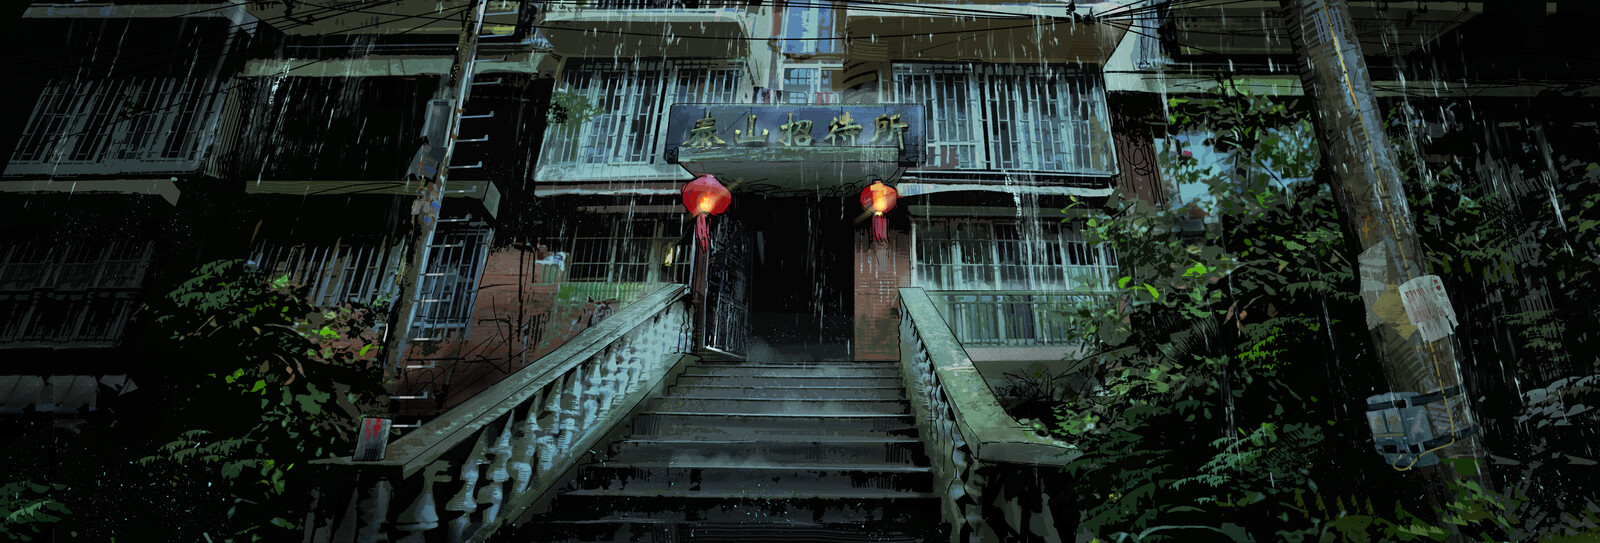 泰山诡谭 The Mystery of Taishan Inn